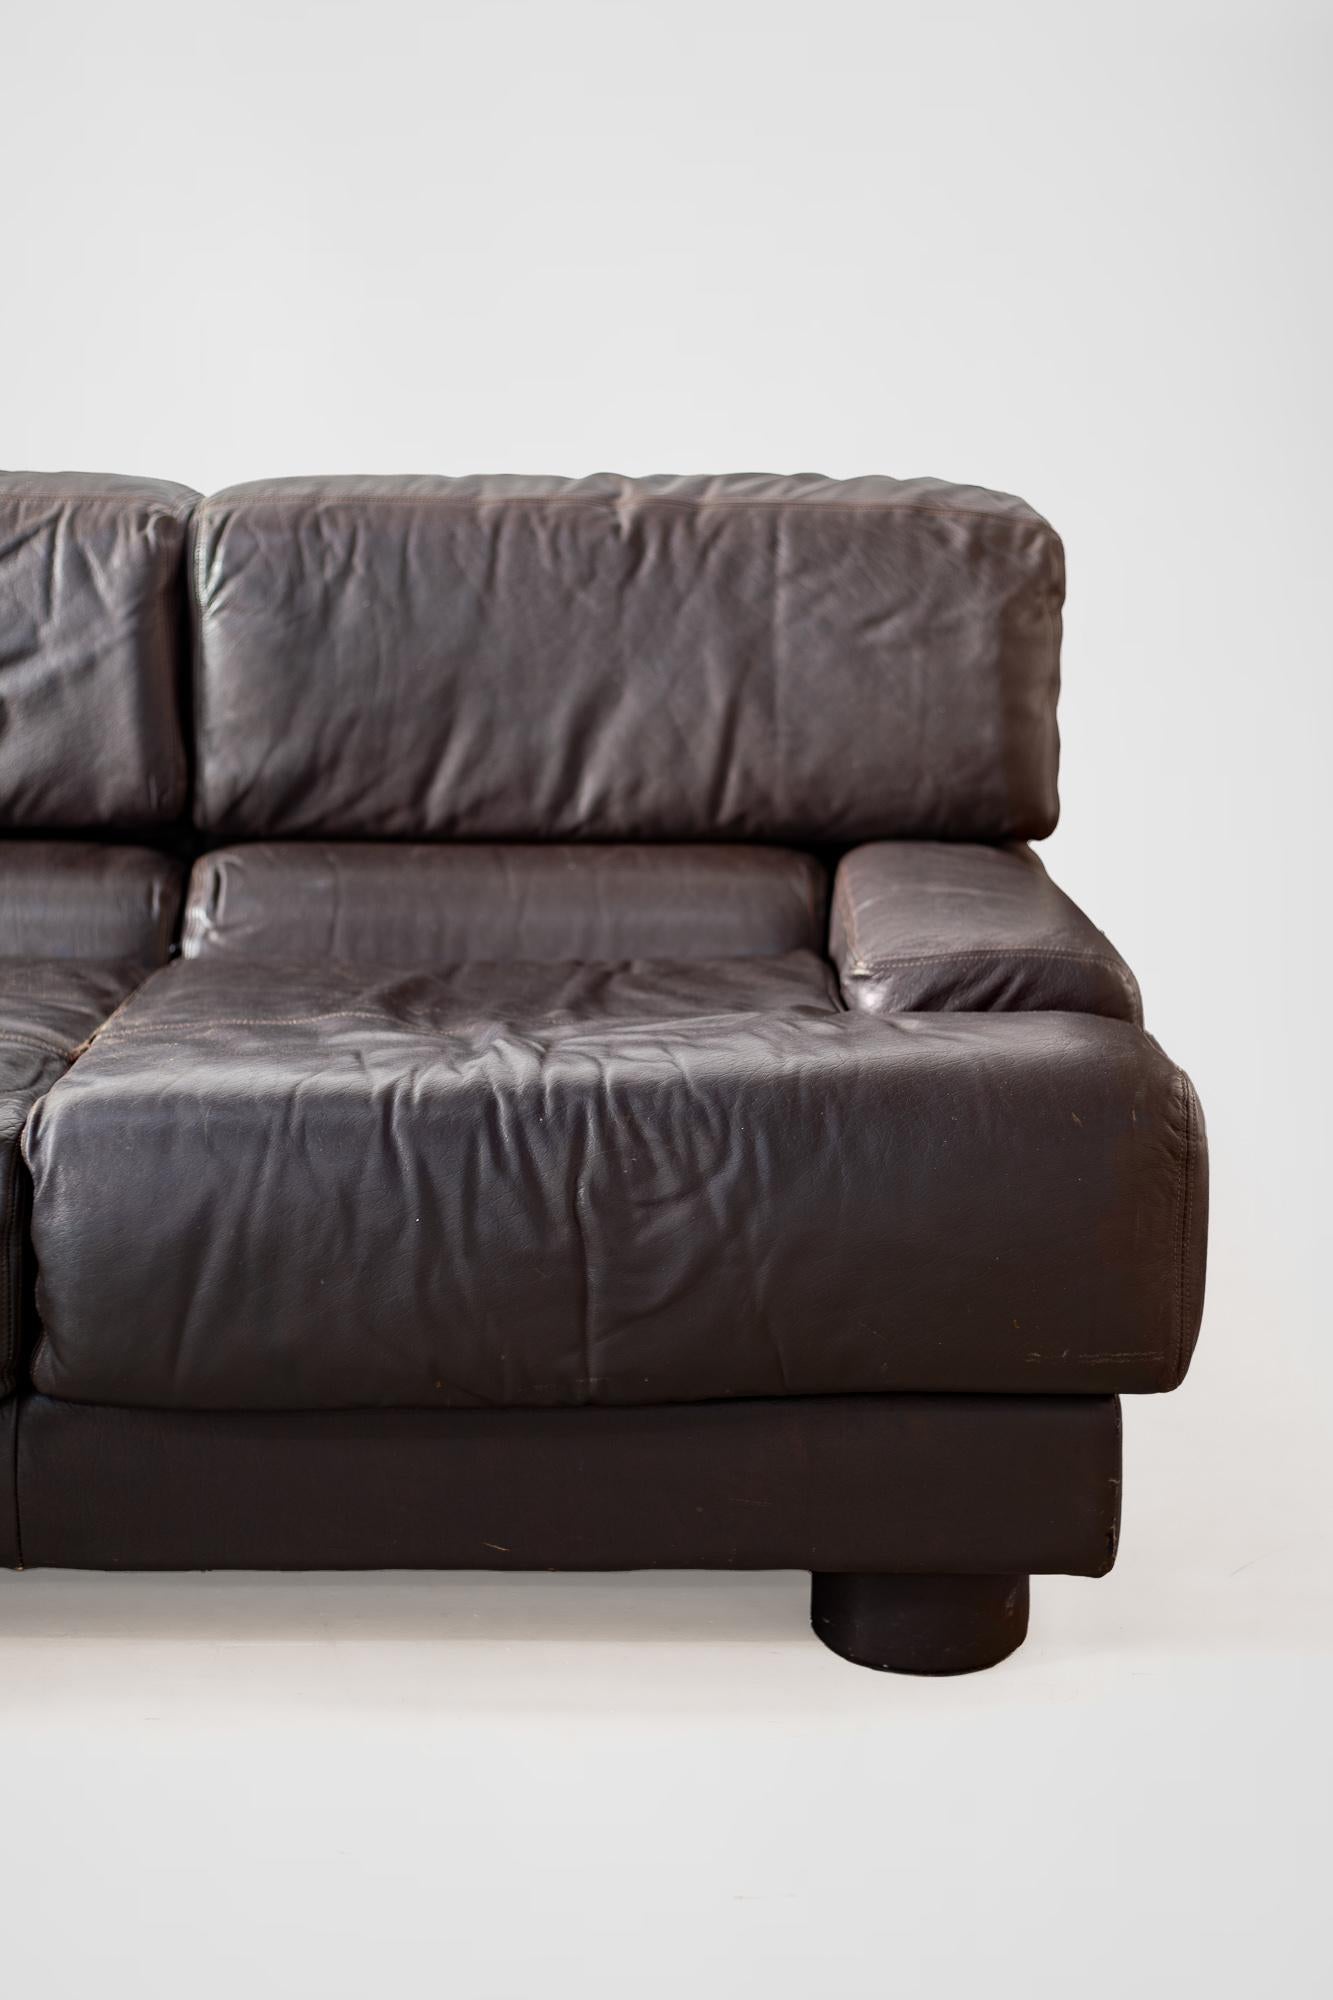 Rare Percival Lafer Sofa in Dark Brown Leather 8